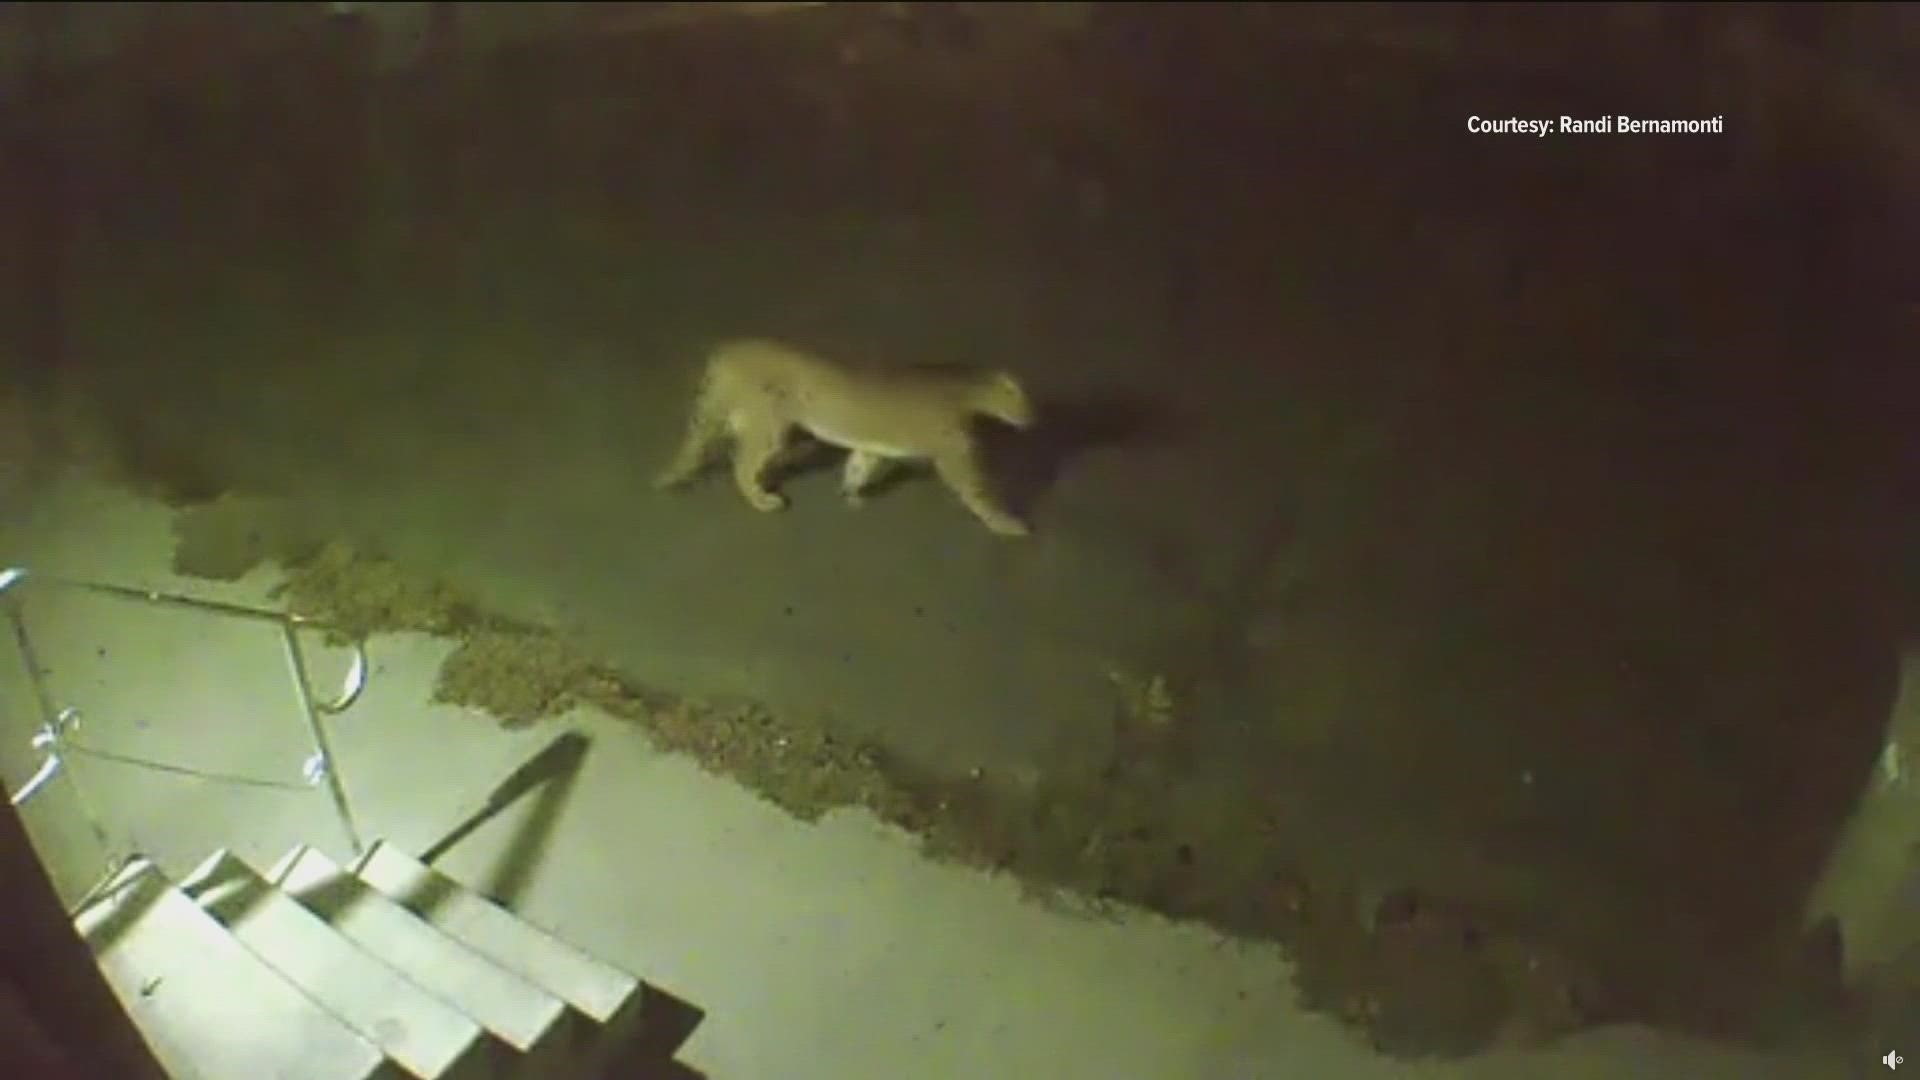 Randi Bernamonti sent video of a cougar walking across her lawn in a Garden City neighborhood.